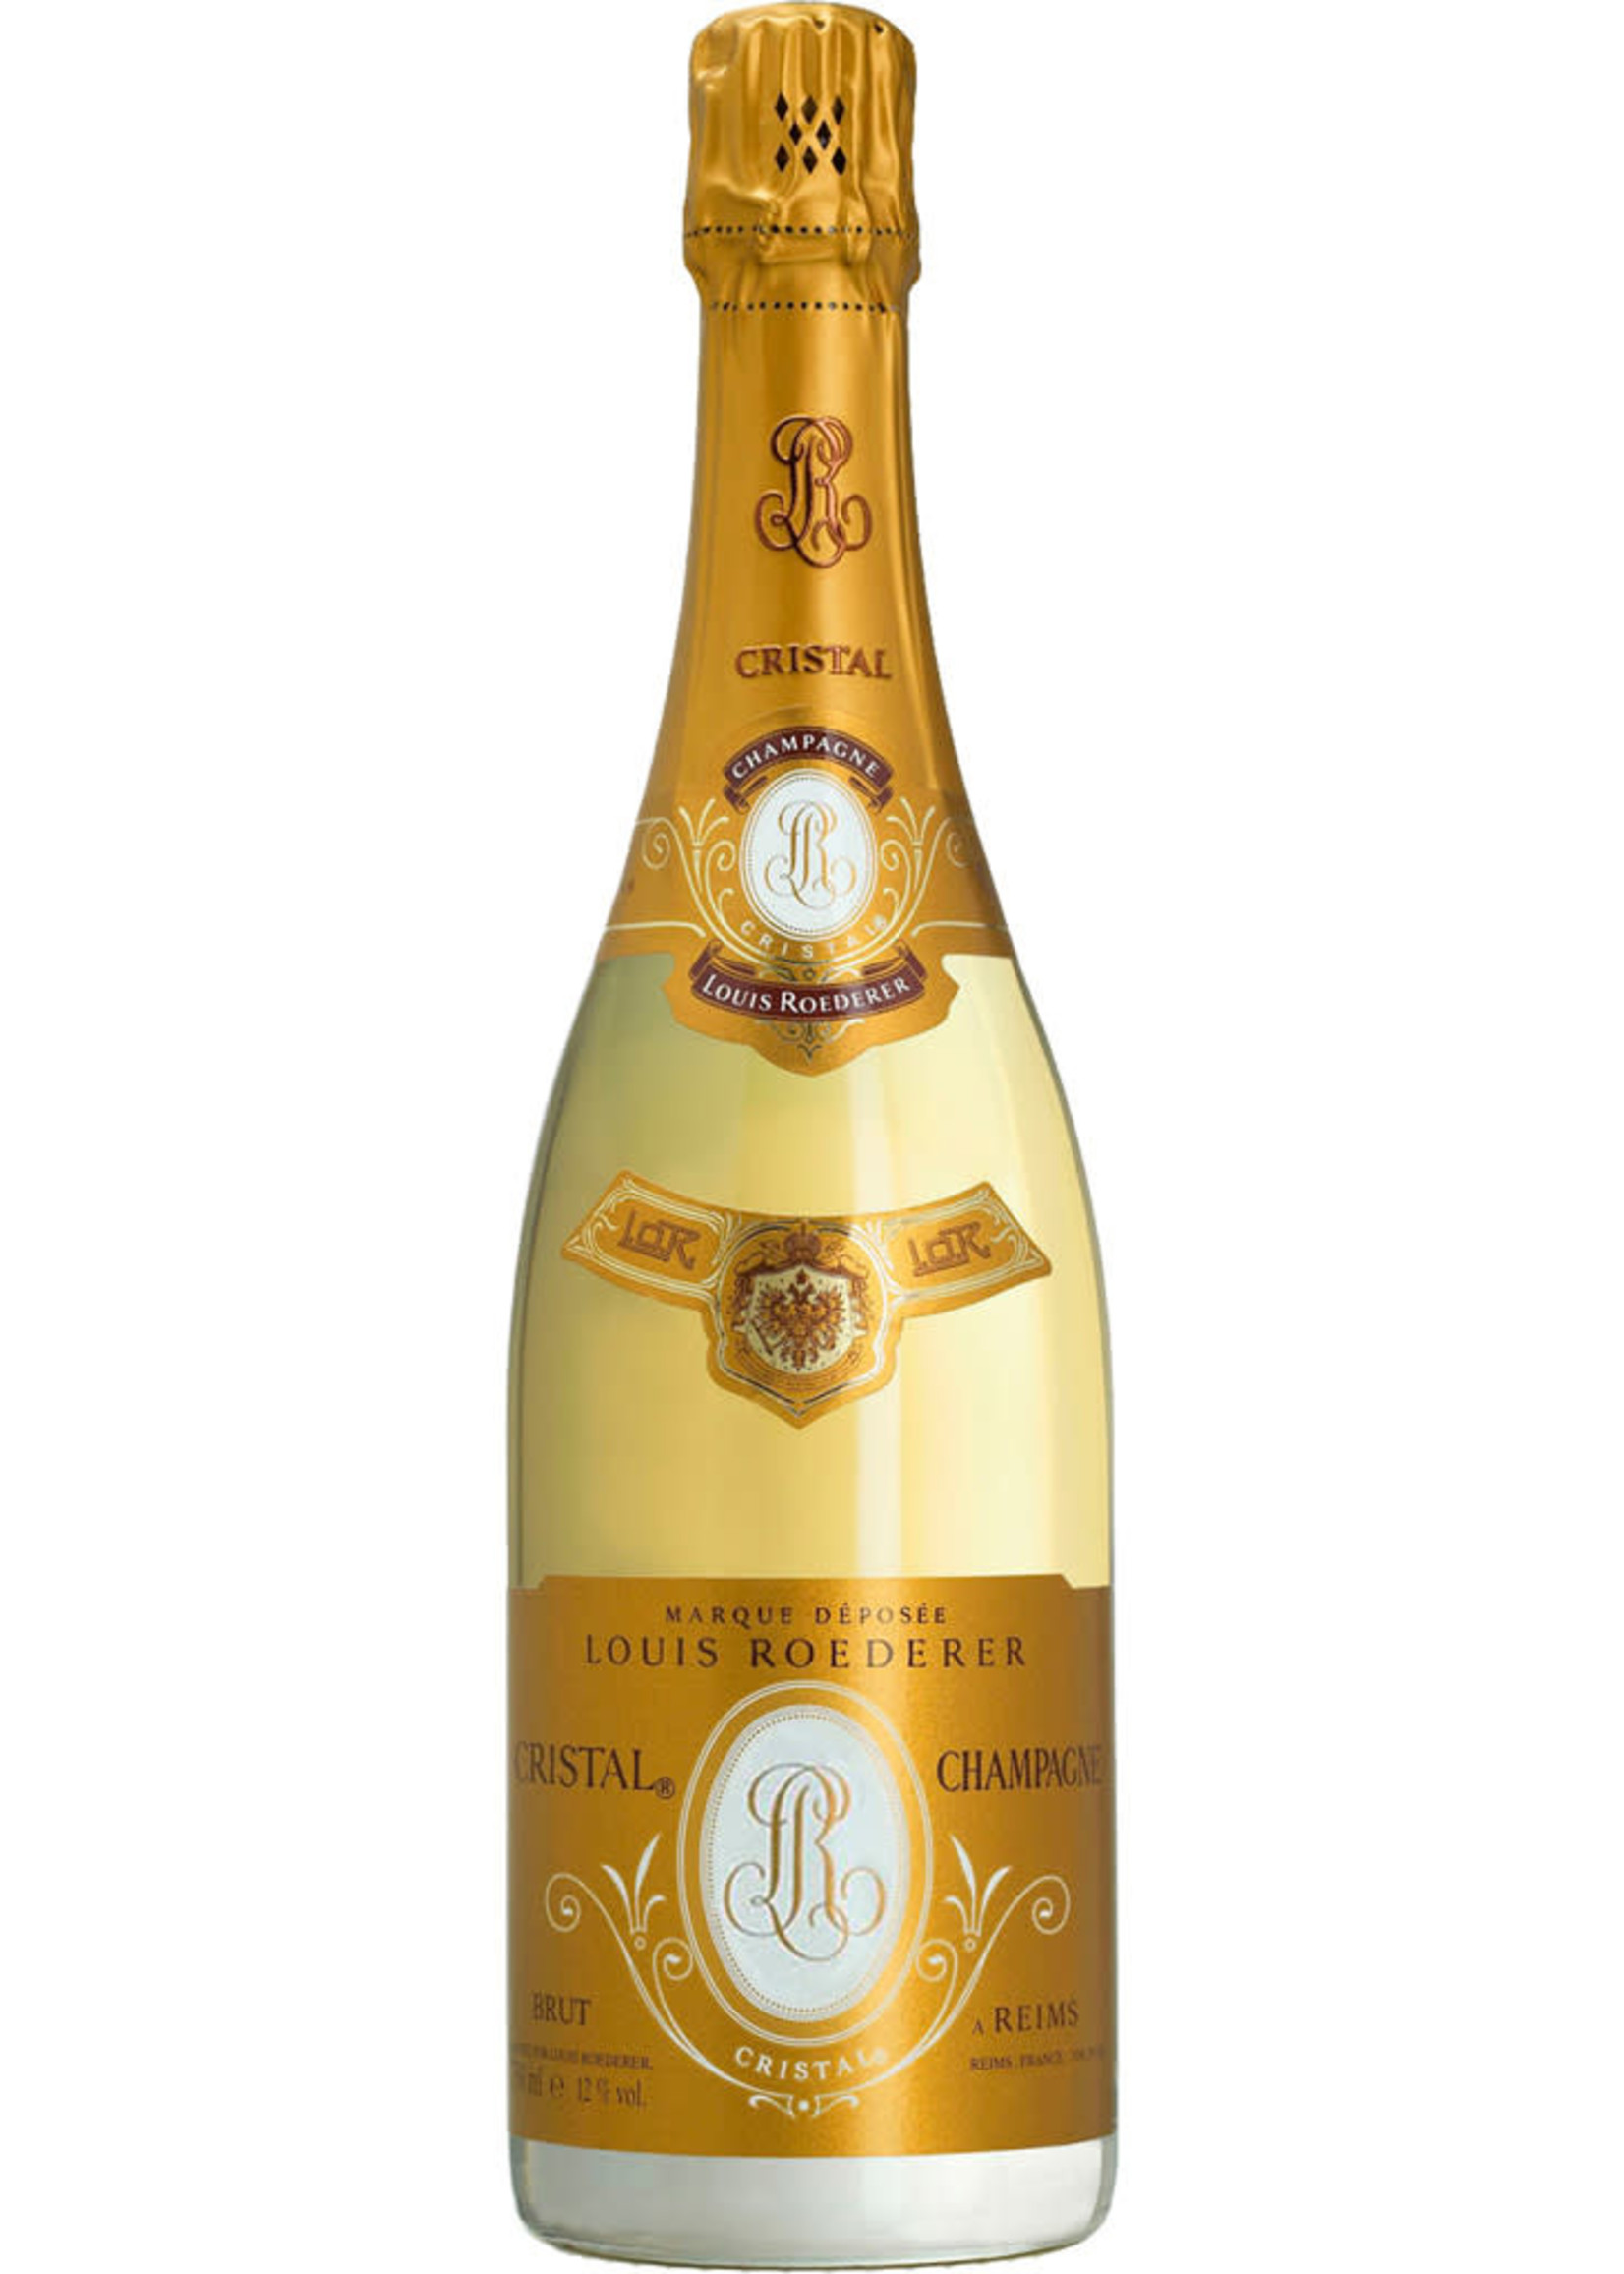 Louis Roederer Estate 2013 Cristal Champagne, France